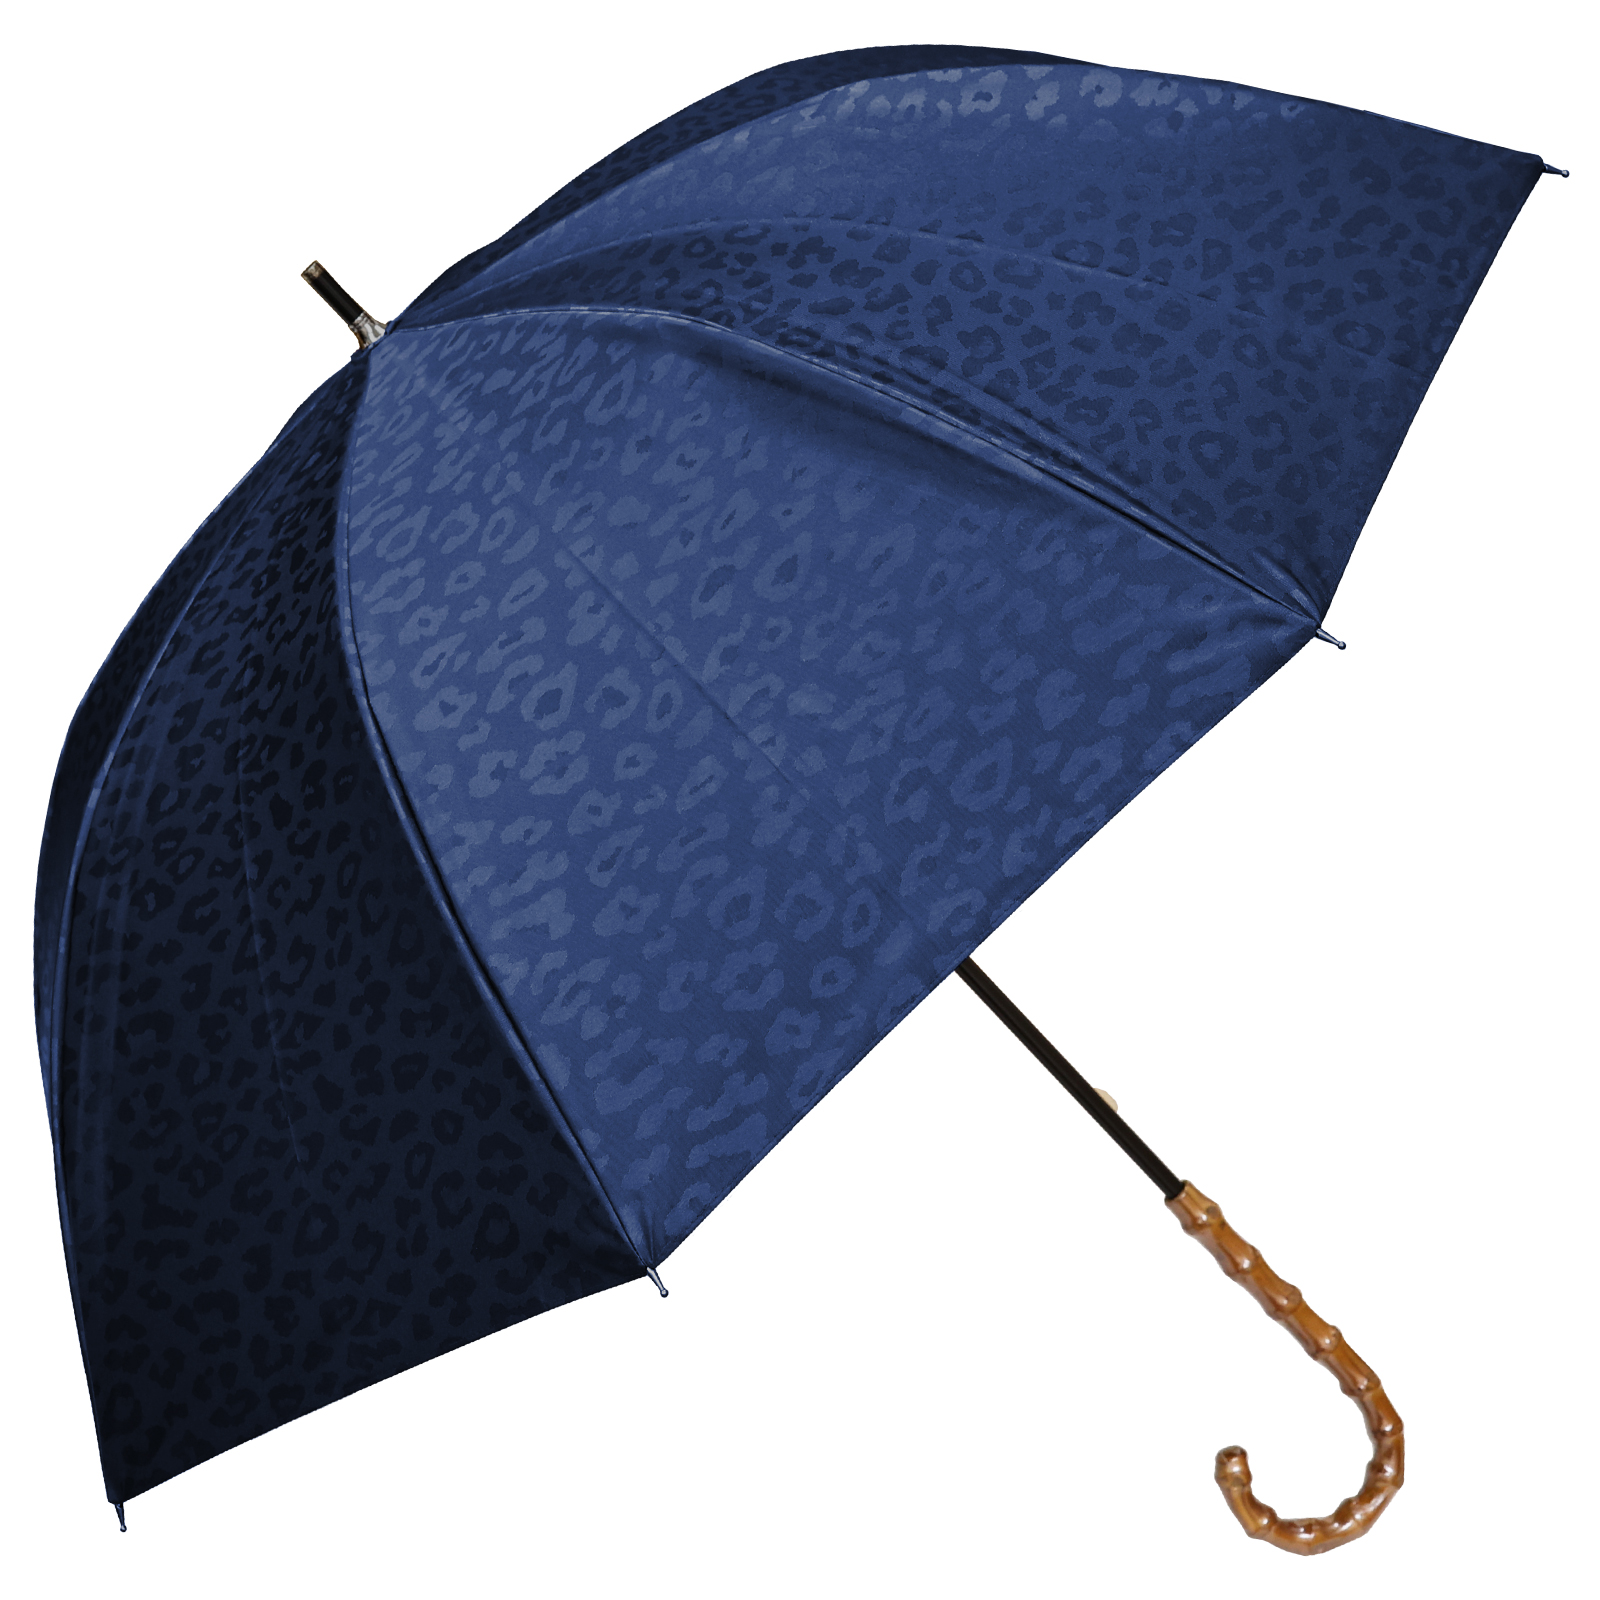 日傘 完全遮光 長傘 uv 晴雨兼用 1級遮光 遮熱 涼しい おしゃれ 軽量 完全遮光 レオパード ...